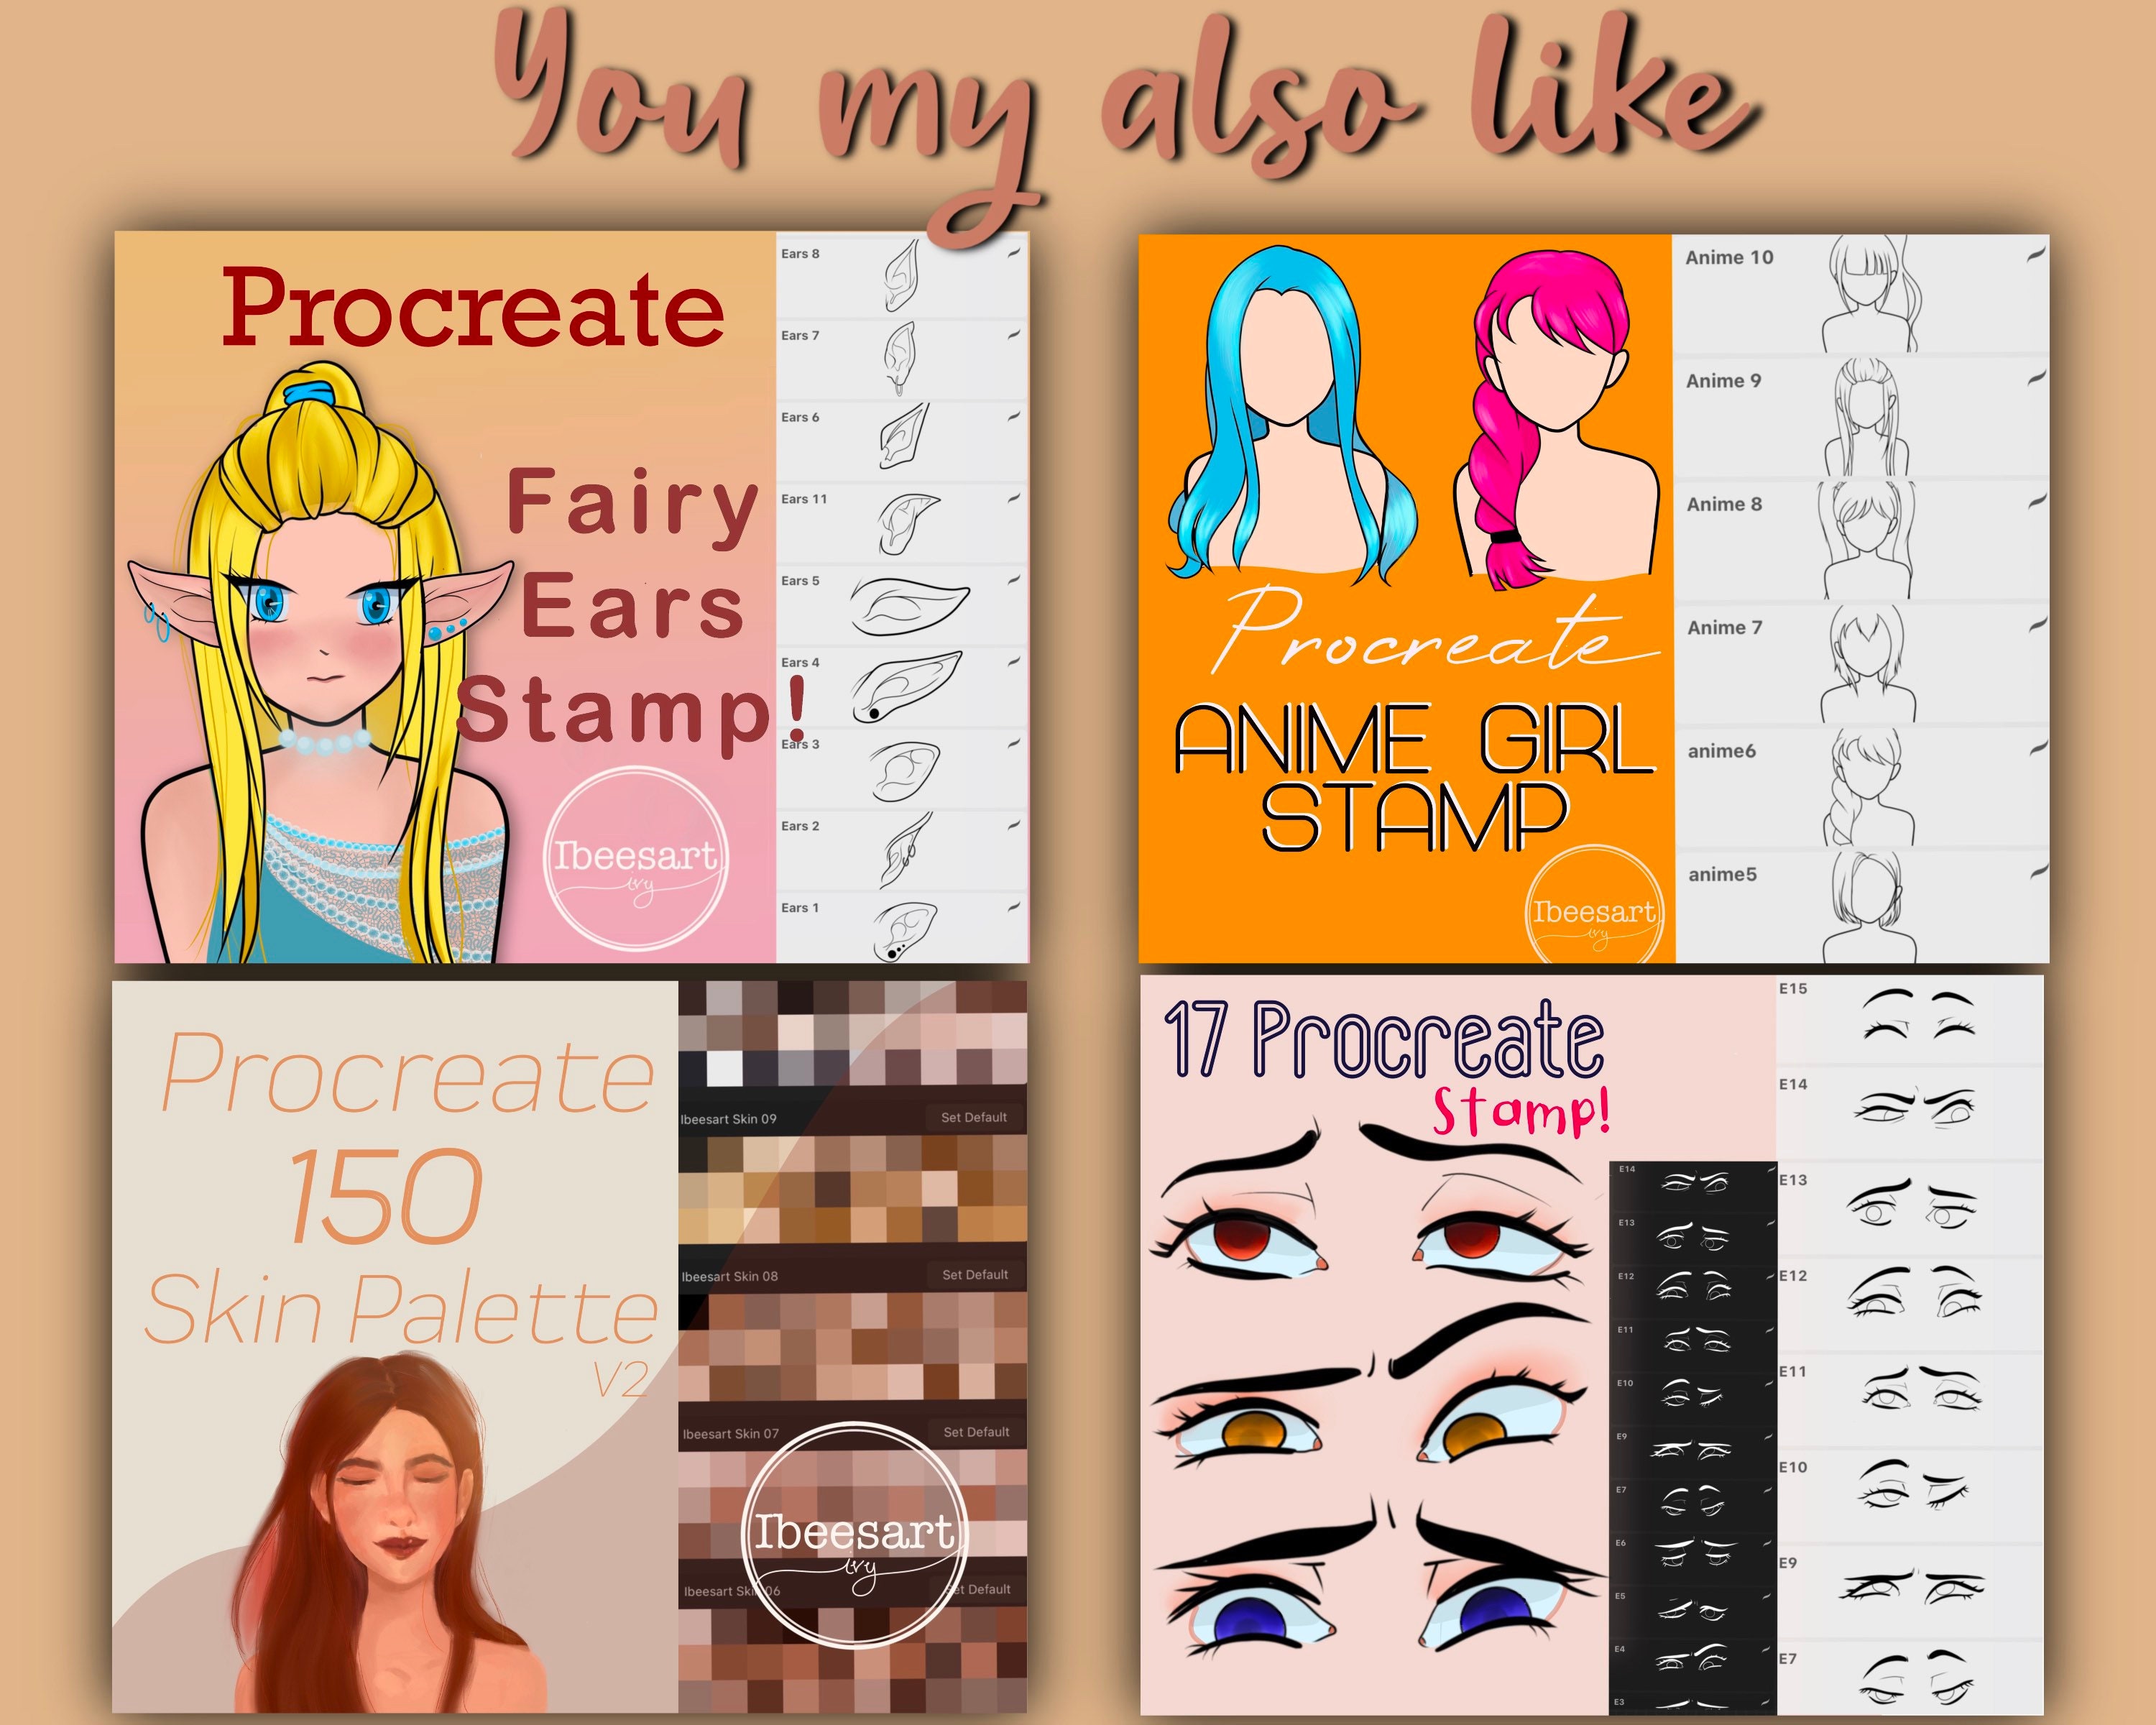 15 Procreate Eyes Stamp Procreate Anime Eyes brush | Etsy